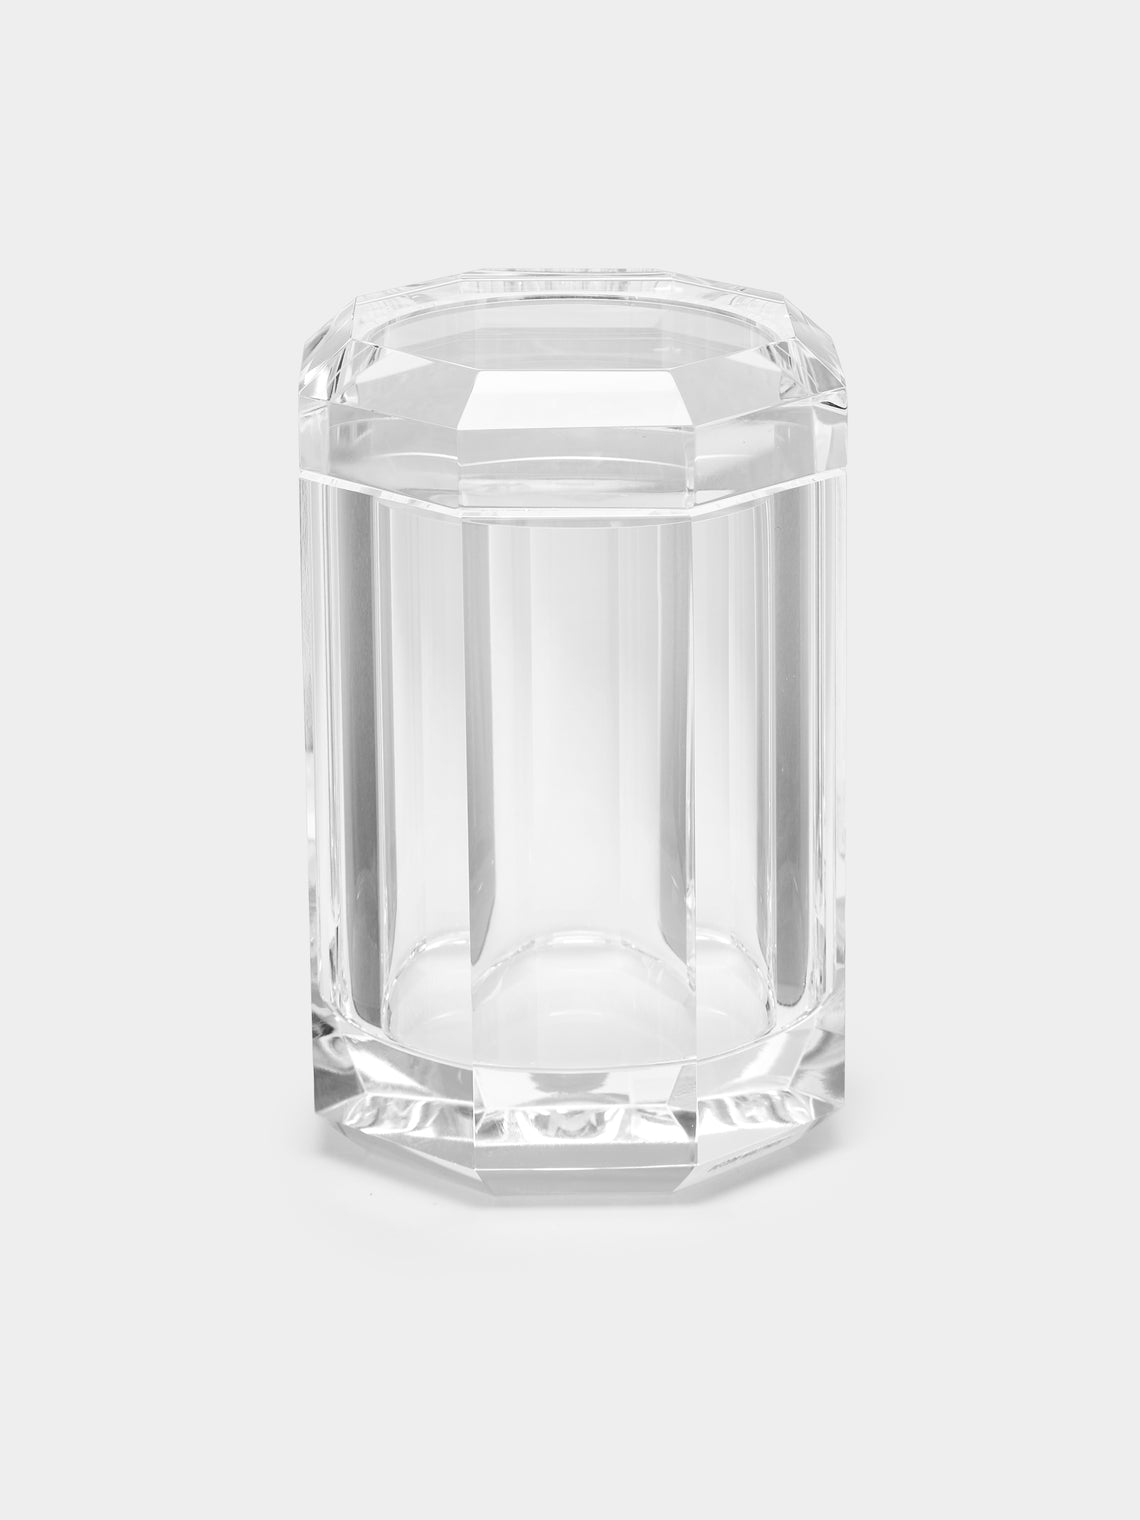 Décor Walther - Cut Crystal Lidded Jar -  - ABASK - 